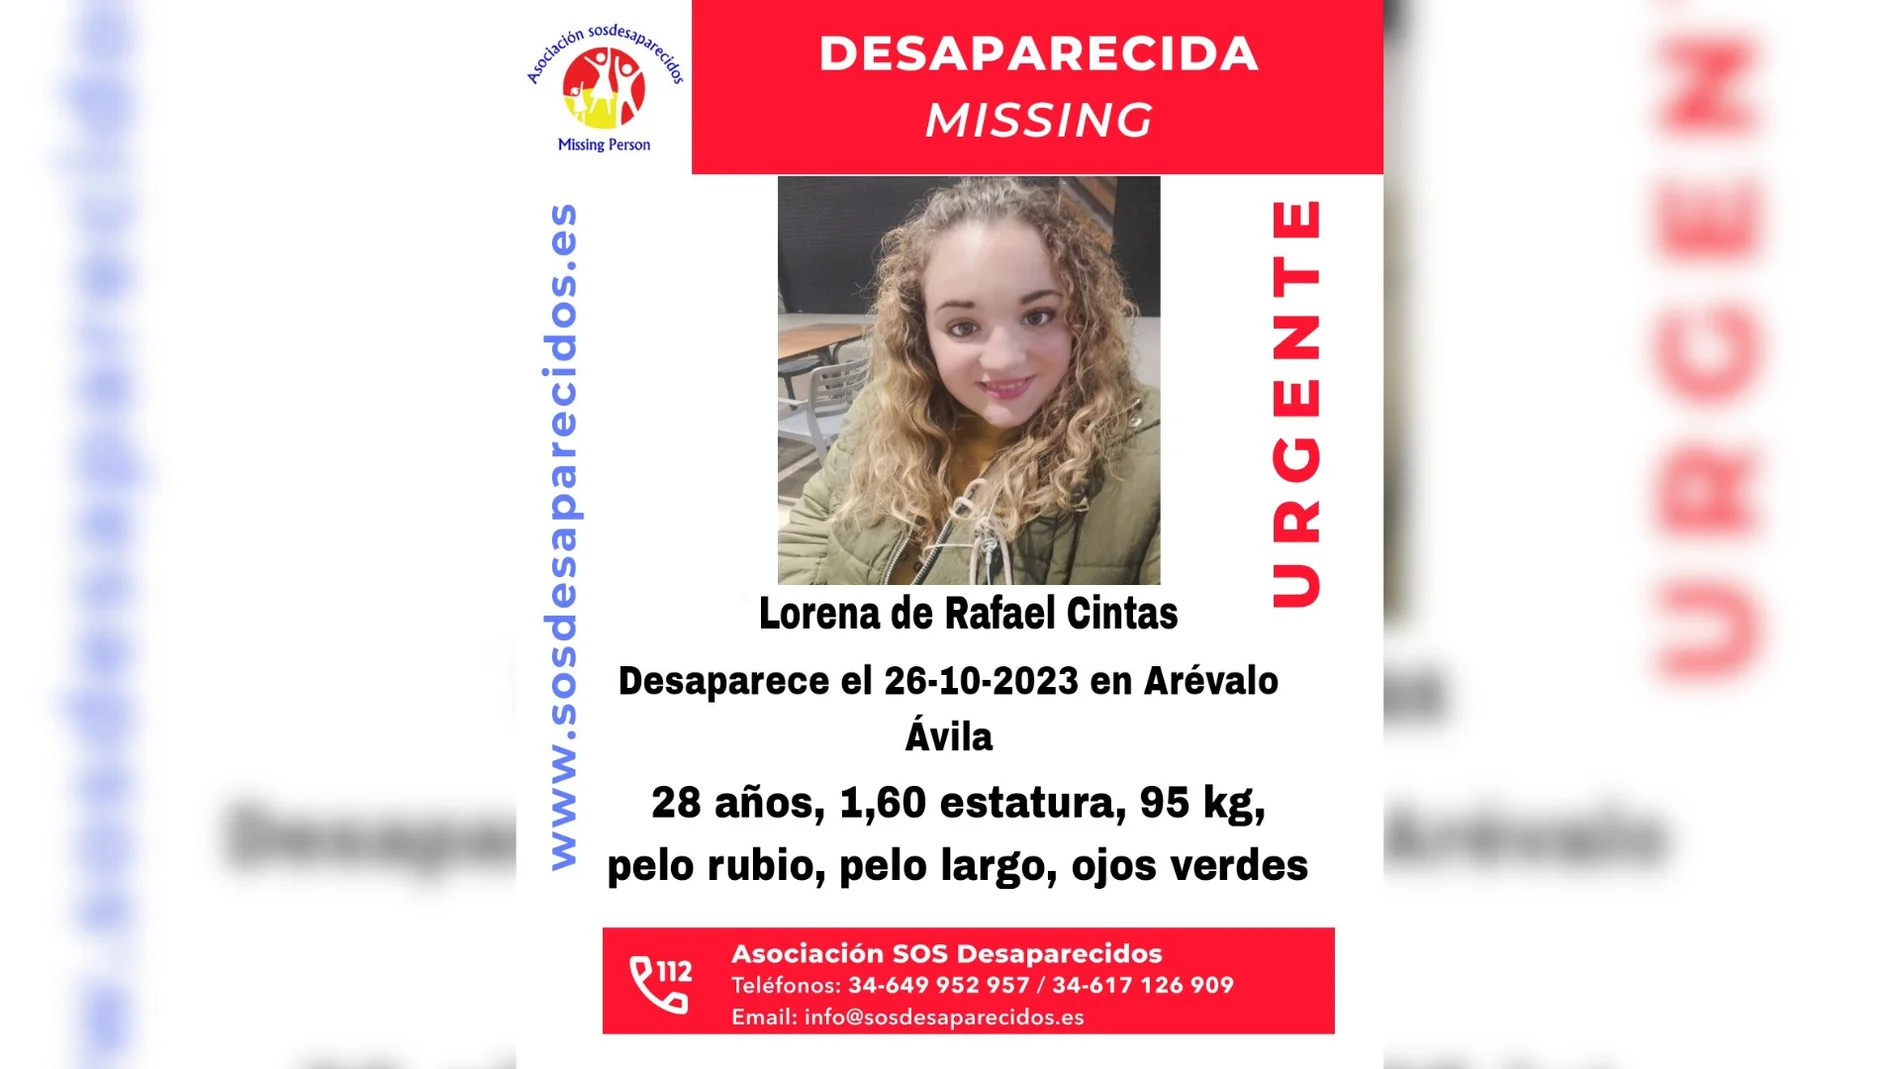 Imagen de la joven de 28 años desaparecida en Ávila